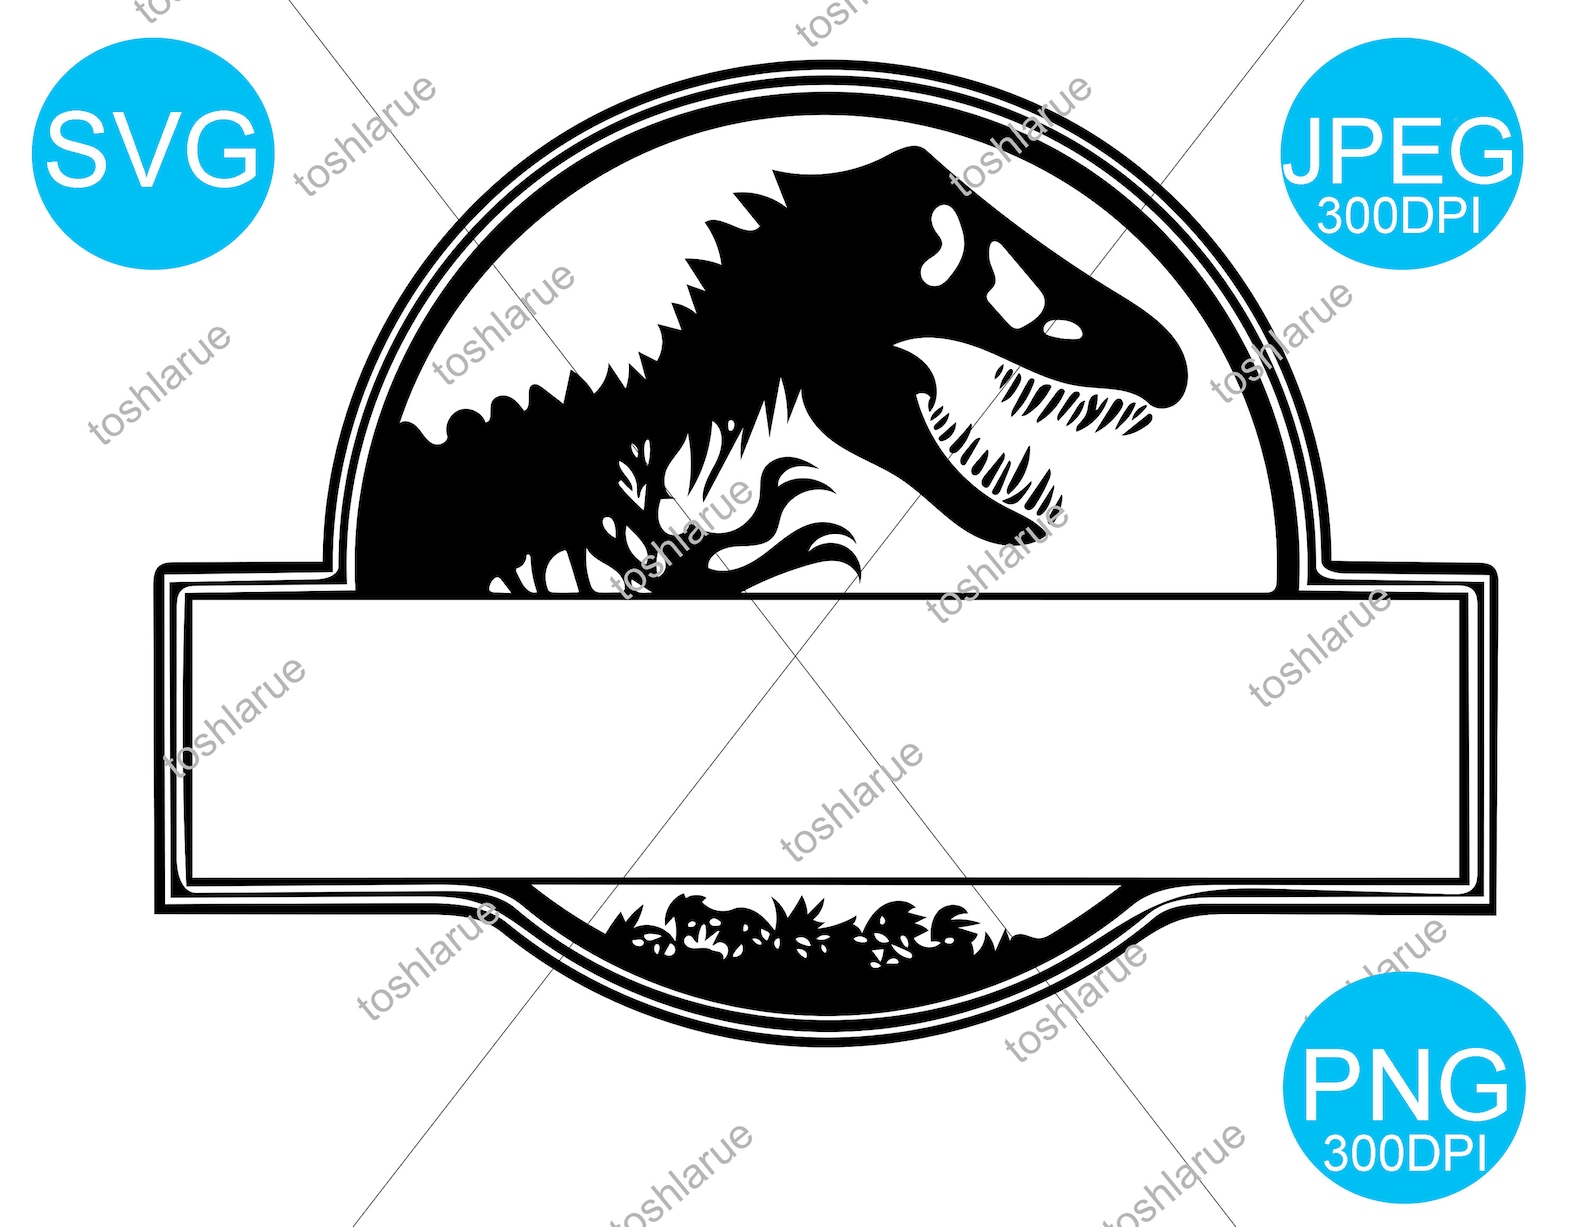 Blank Jurassic Park SVG